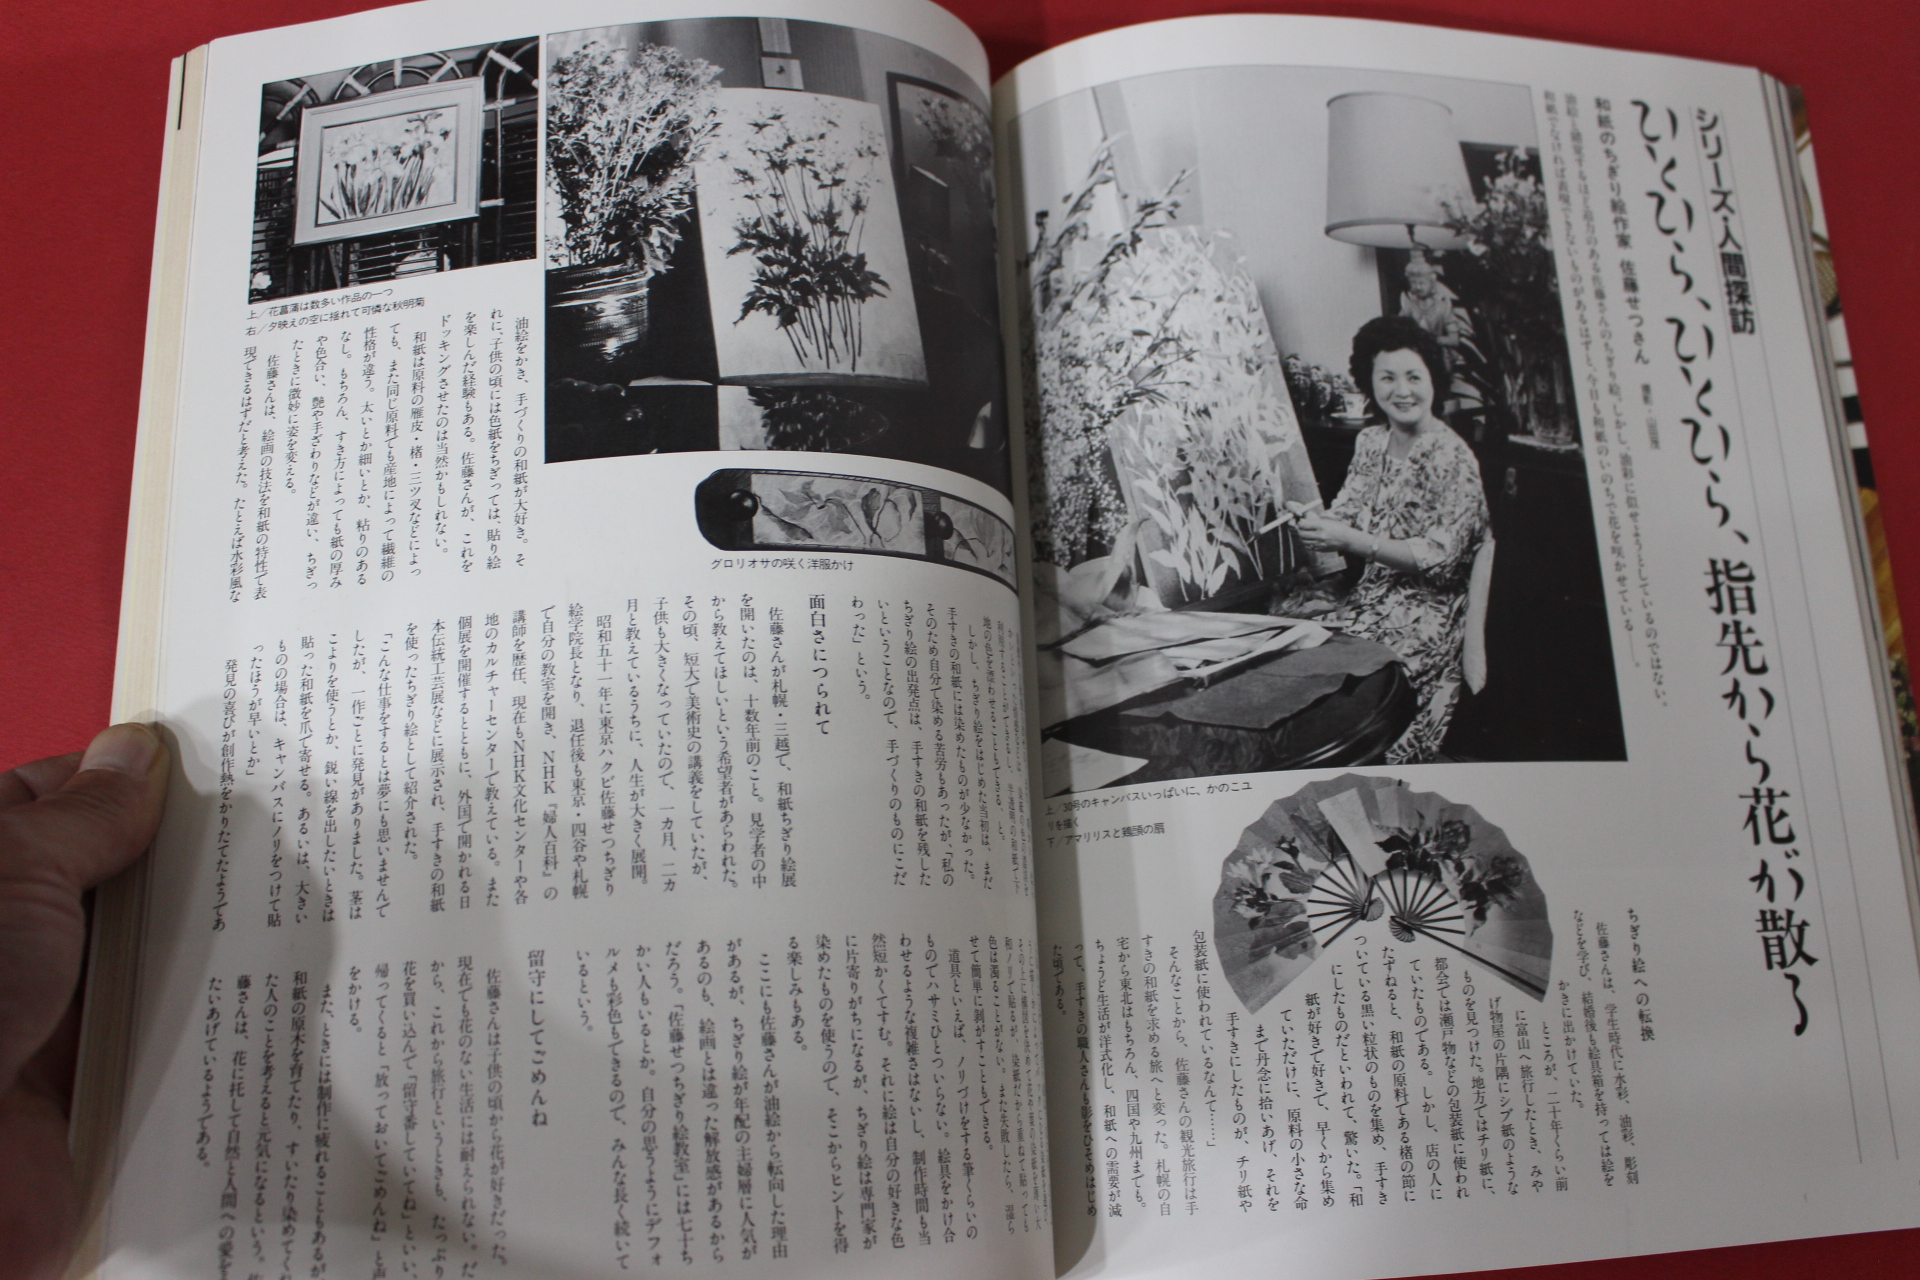 1987년(소화62년) 일본잡지